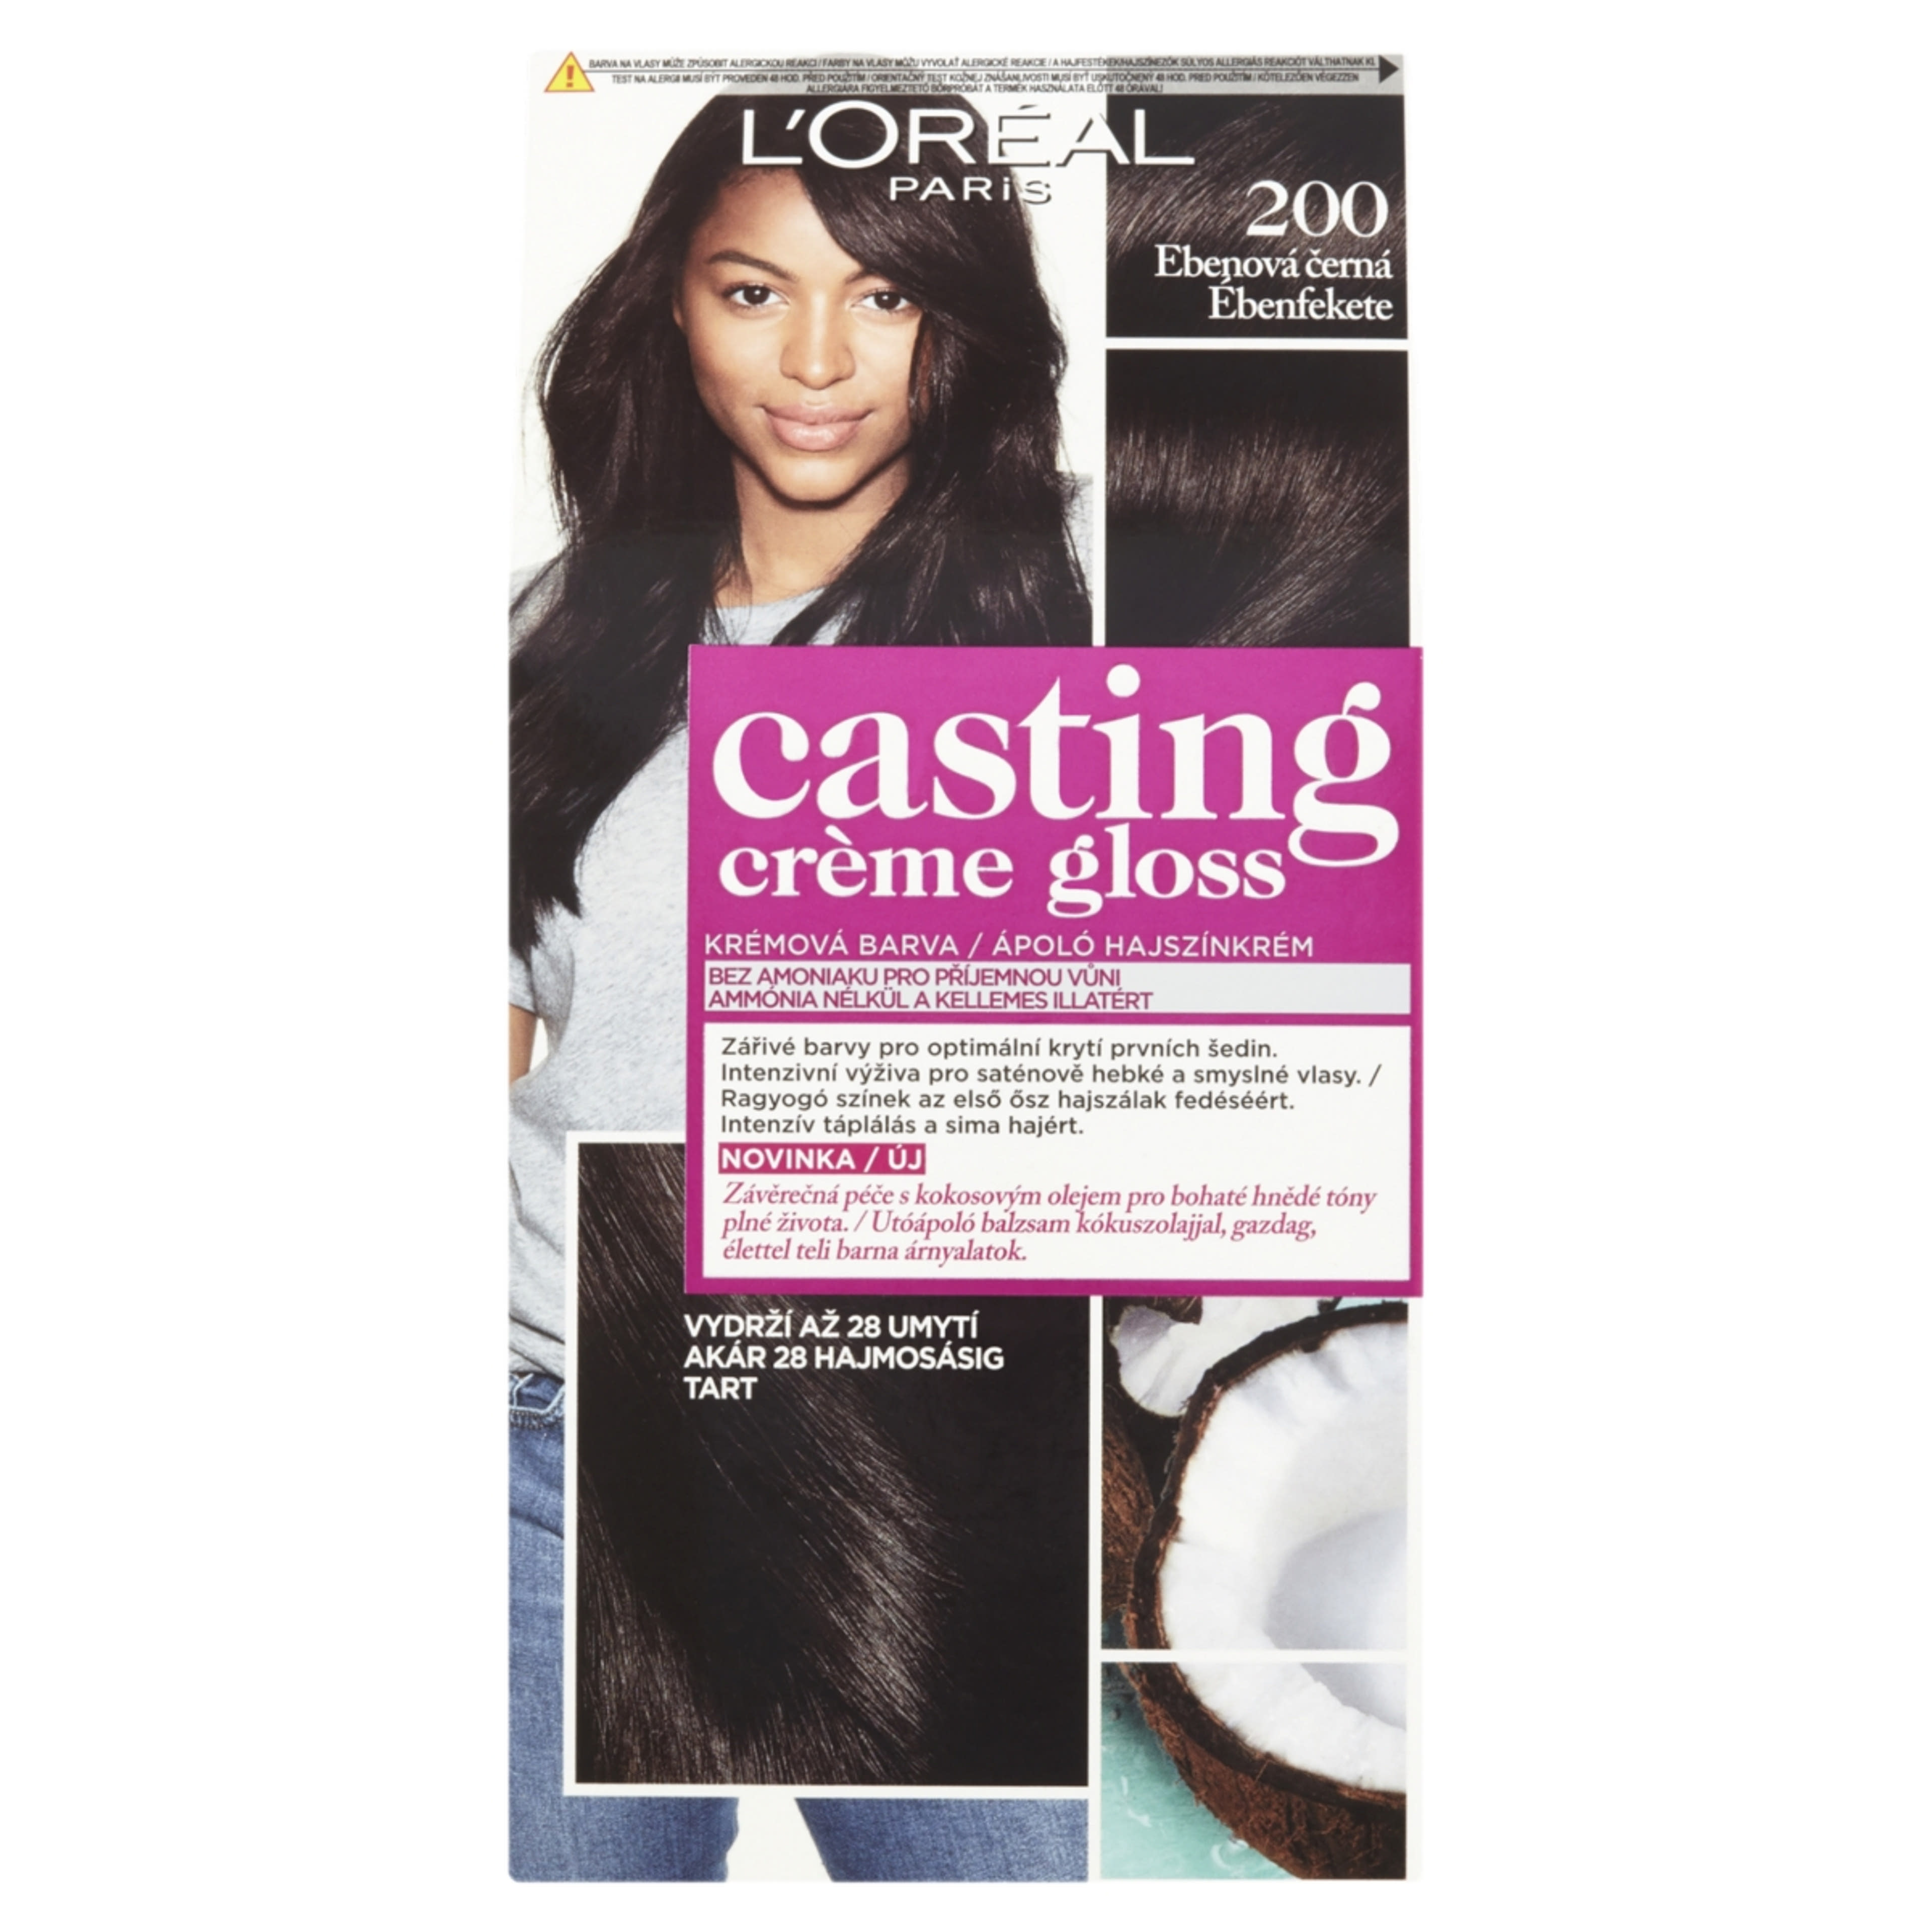 L'Oréal Paris Casting Creme Gloss Hajszínező krém 200 Ébenfekete - 1 db-1